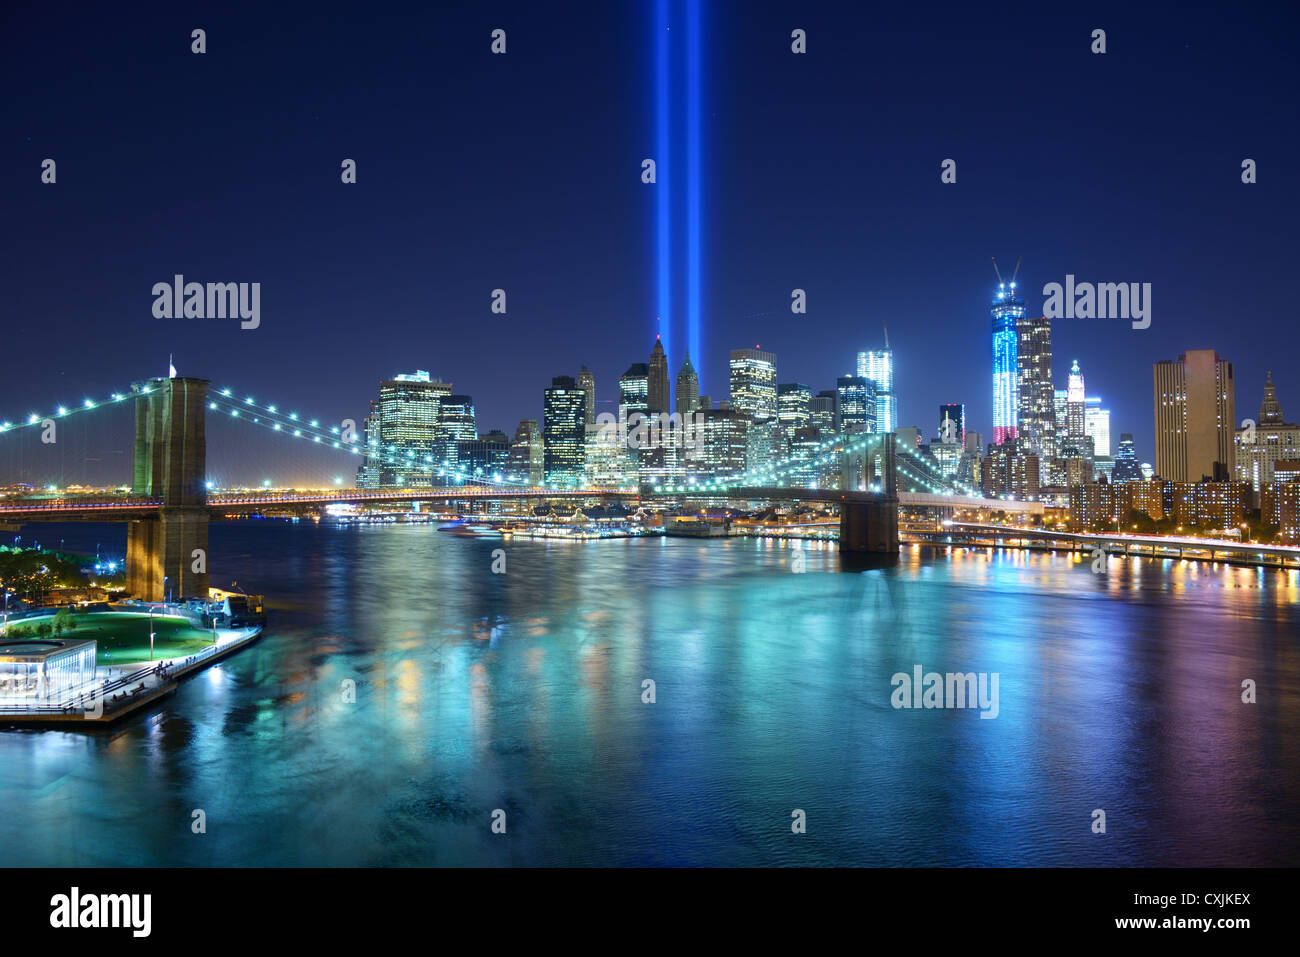 Rendre hommage à la lumière dans le centre-ville de New York en souvenir de l'attentat du 11 septembre. Banque D'Images